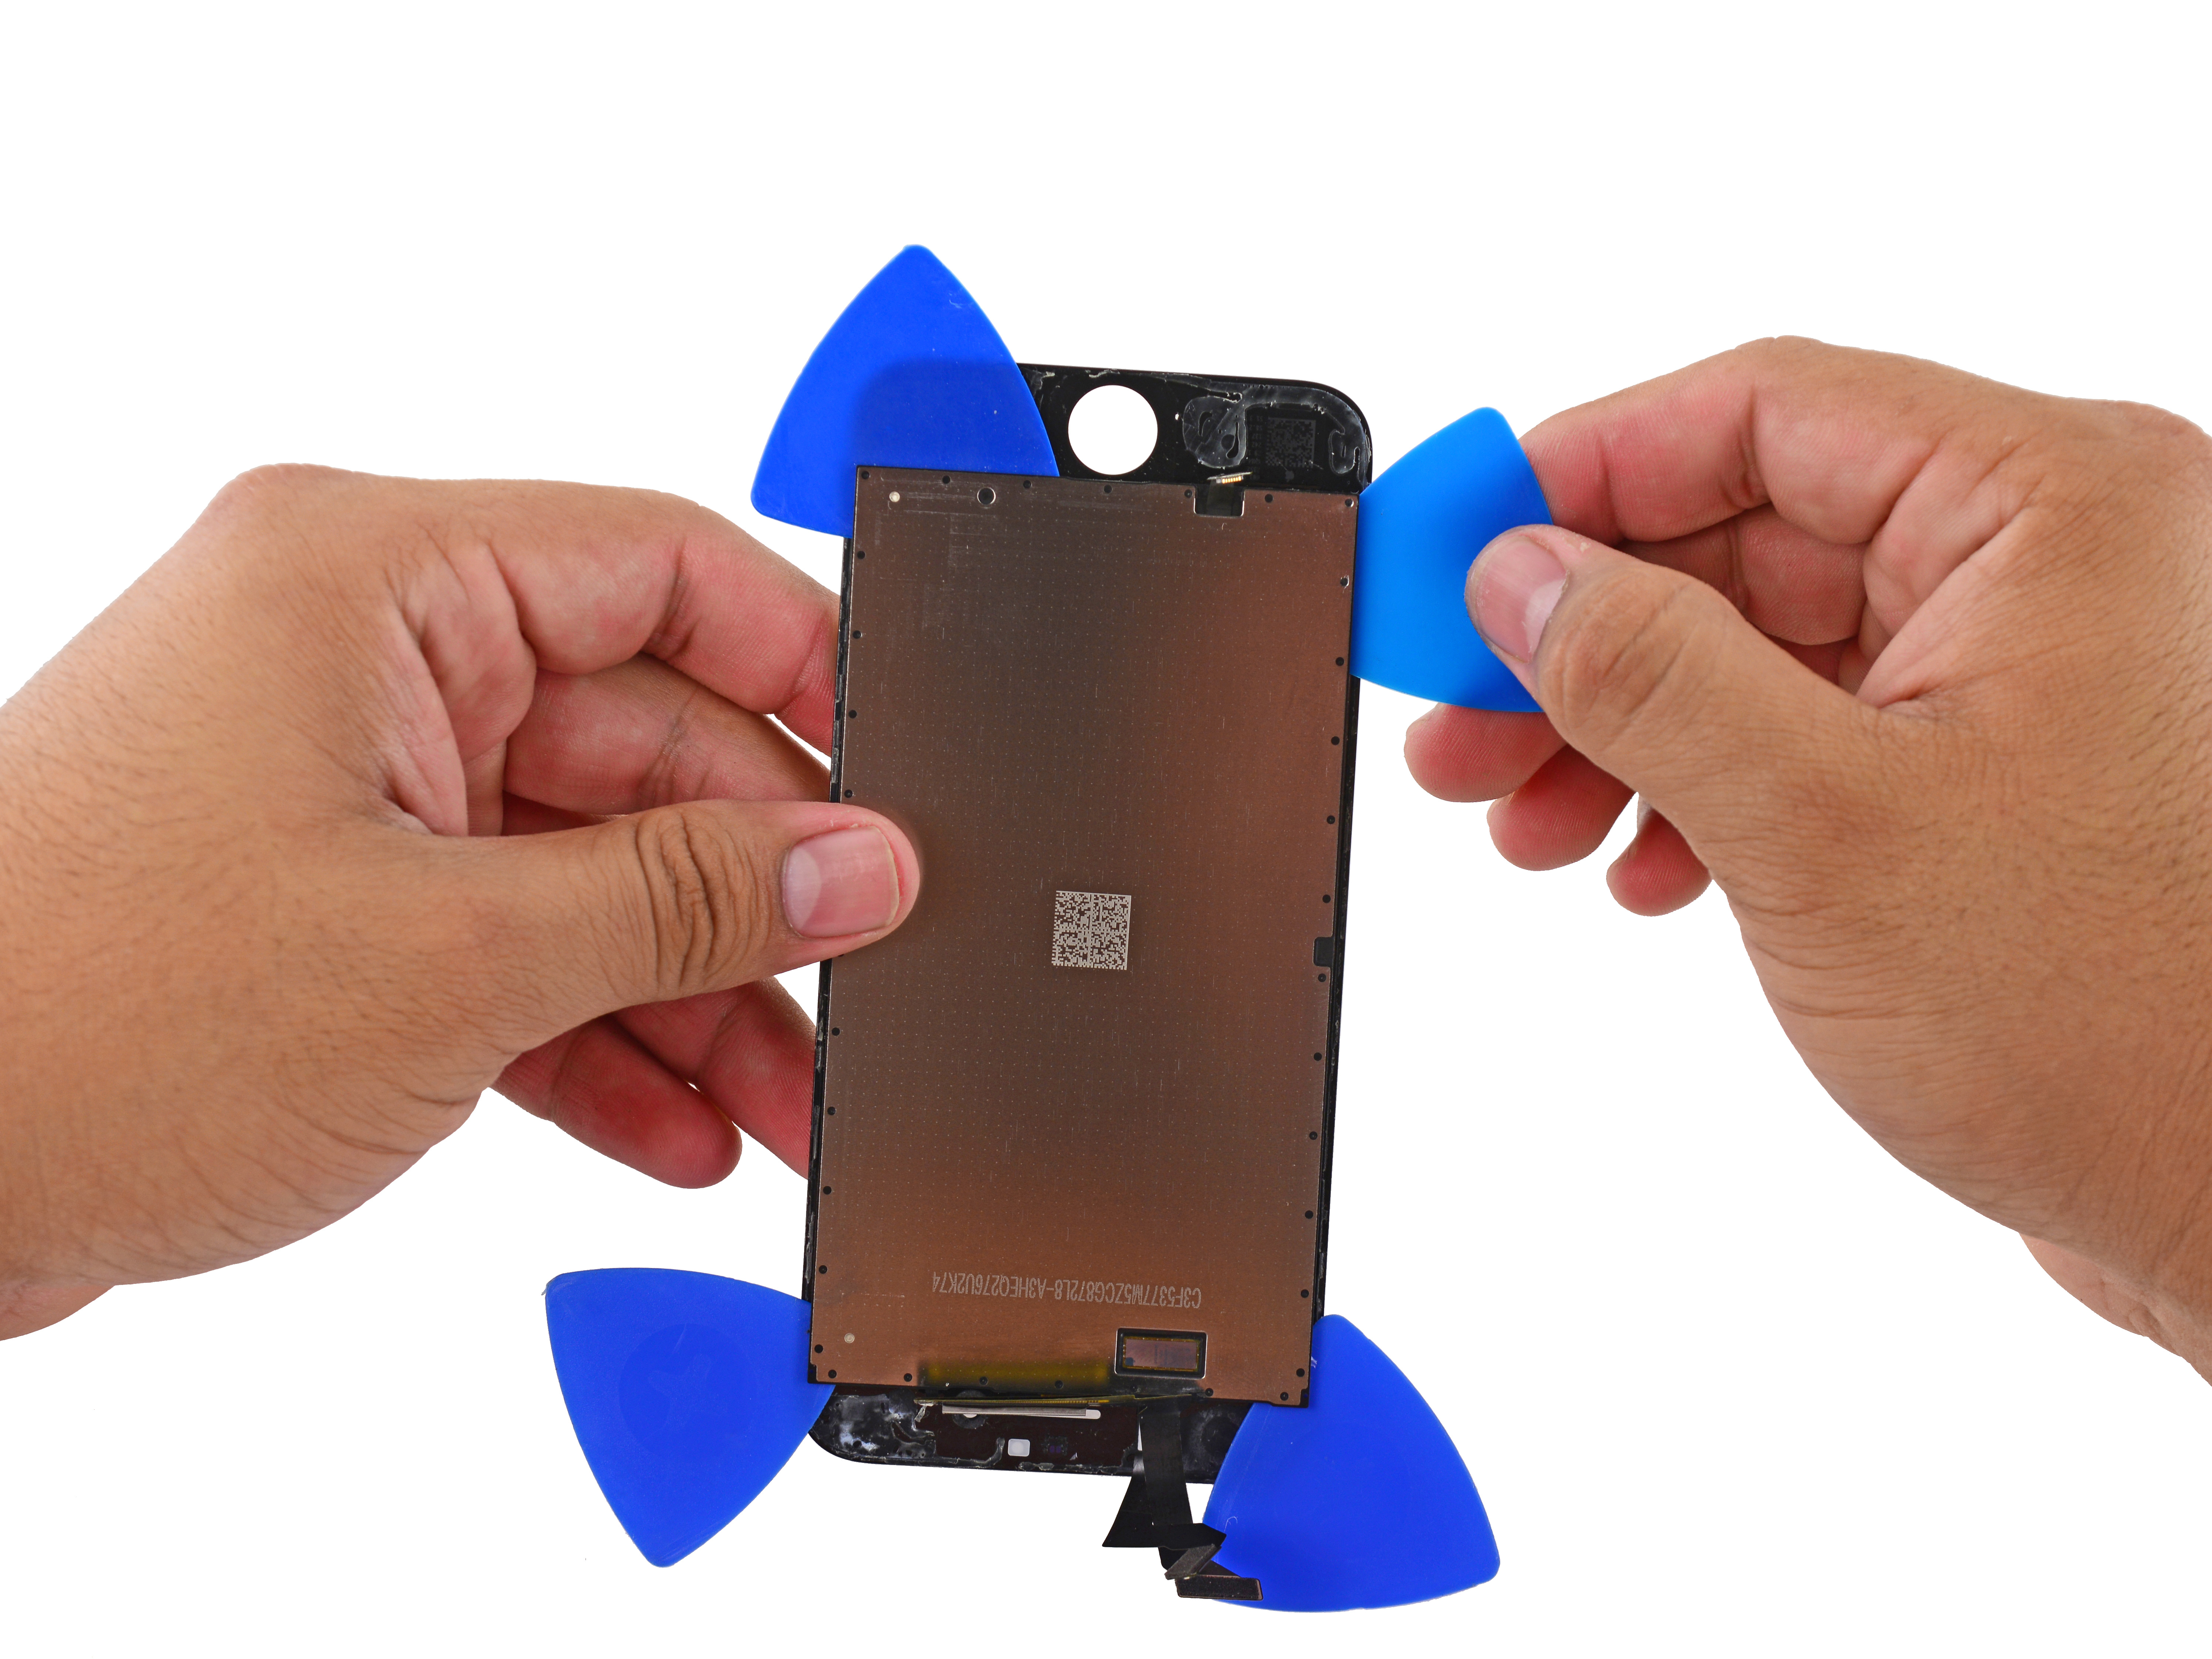 V iFixit rozebrali displej iPhonu 6s, jak vypadá vrstva 3D Touch?